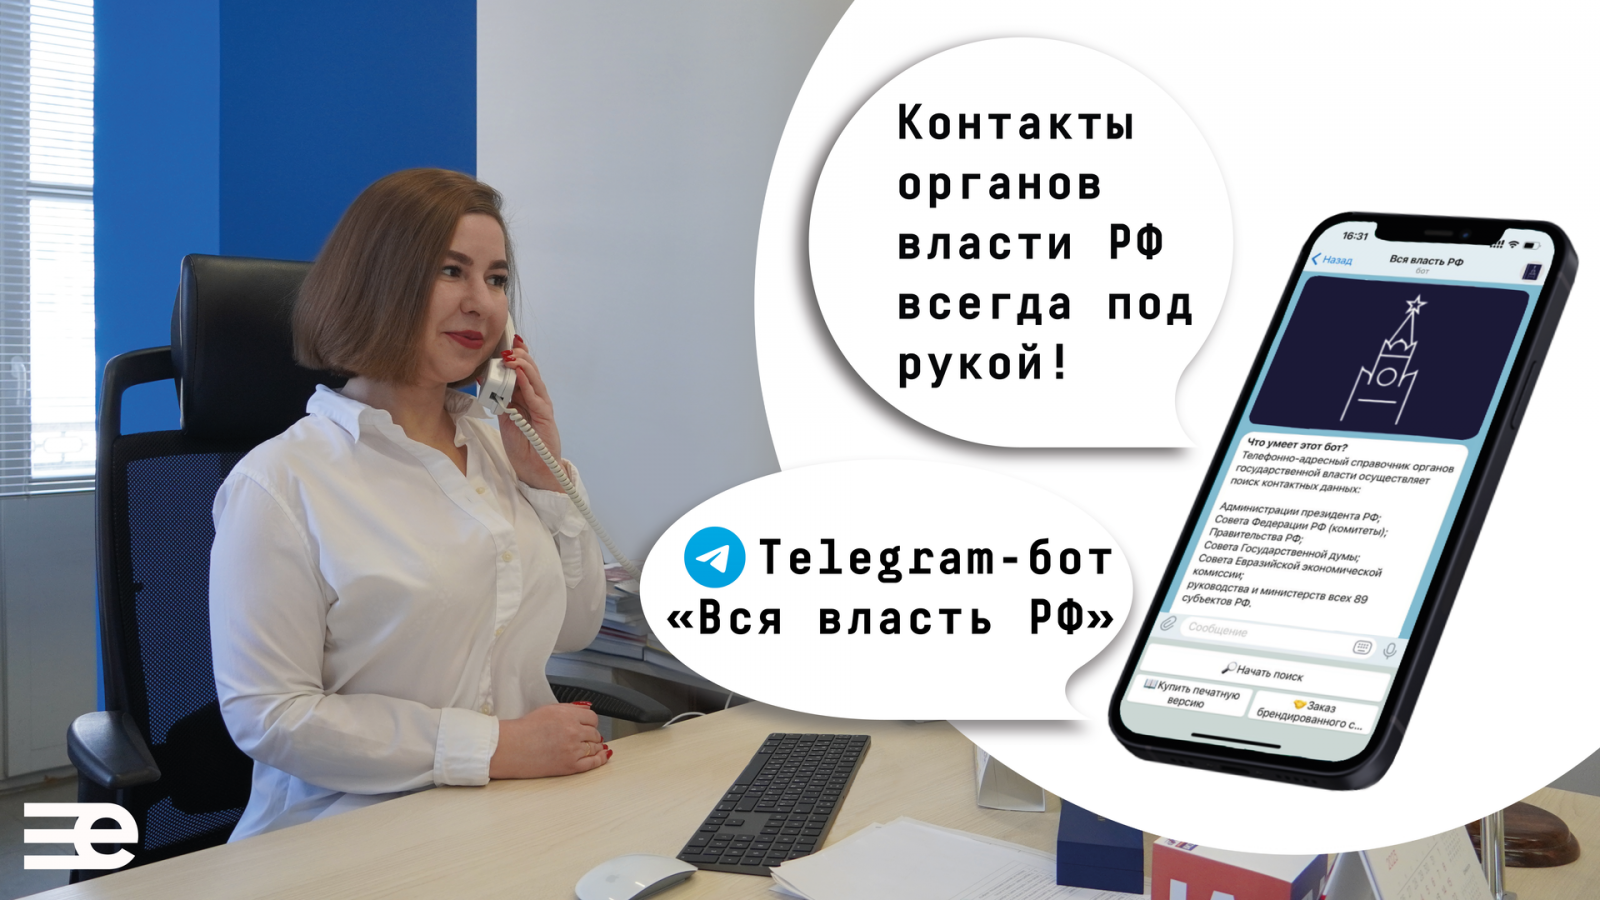 В Telegram появился бот, который находит контакты органов власти всех регионов РФ. ЕвроМедиа